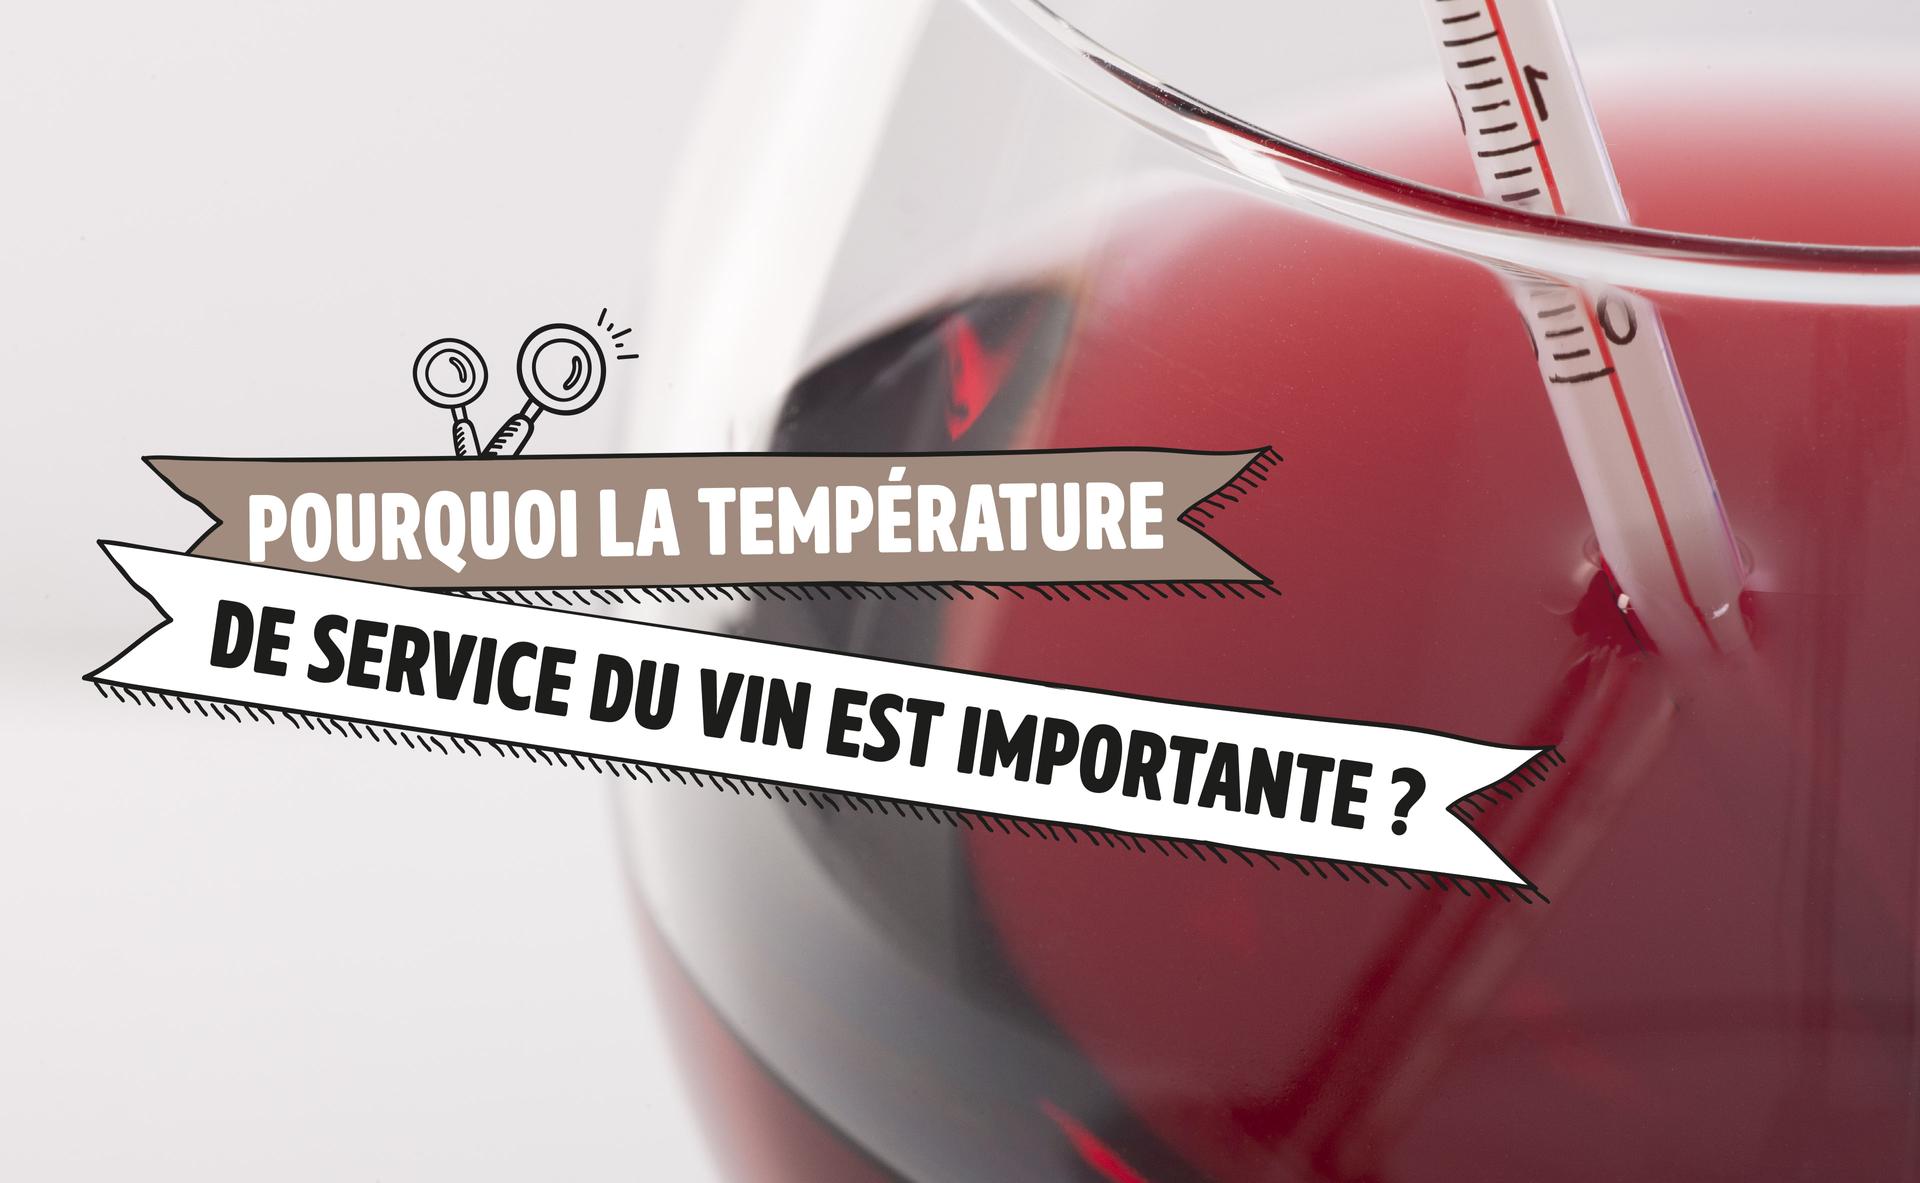 Pourquoi la température de service du vin est-elle importante ?